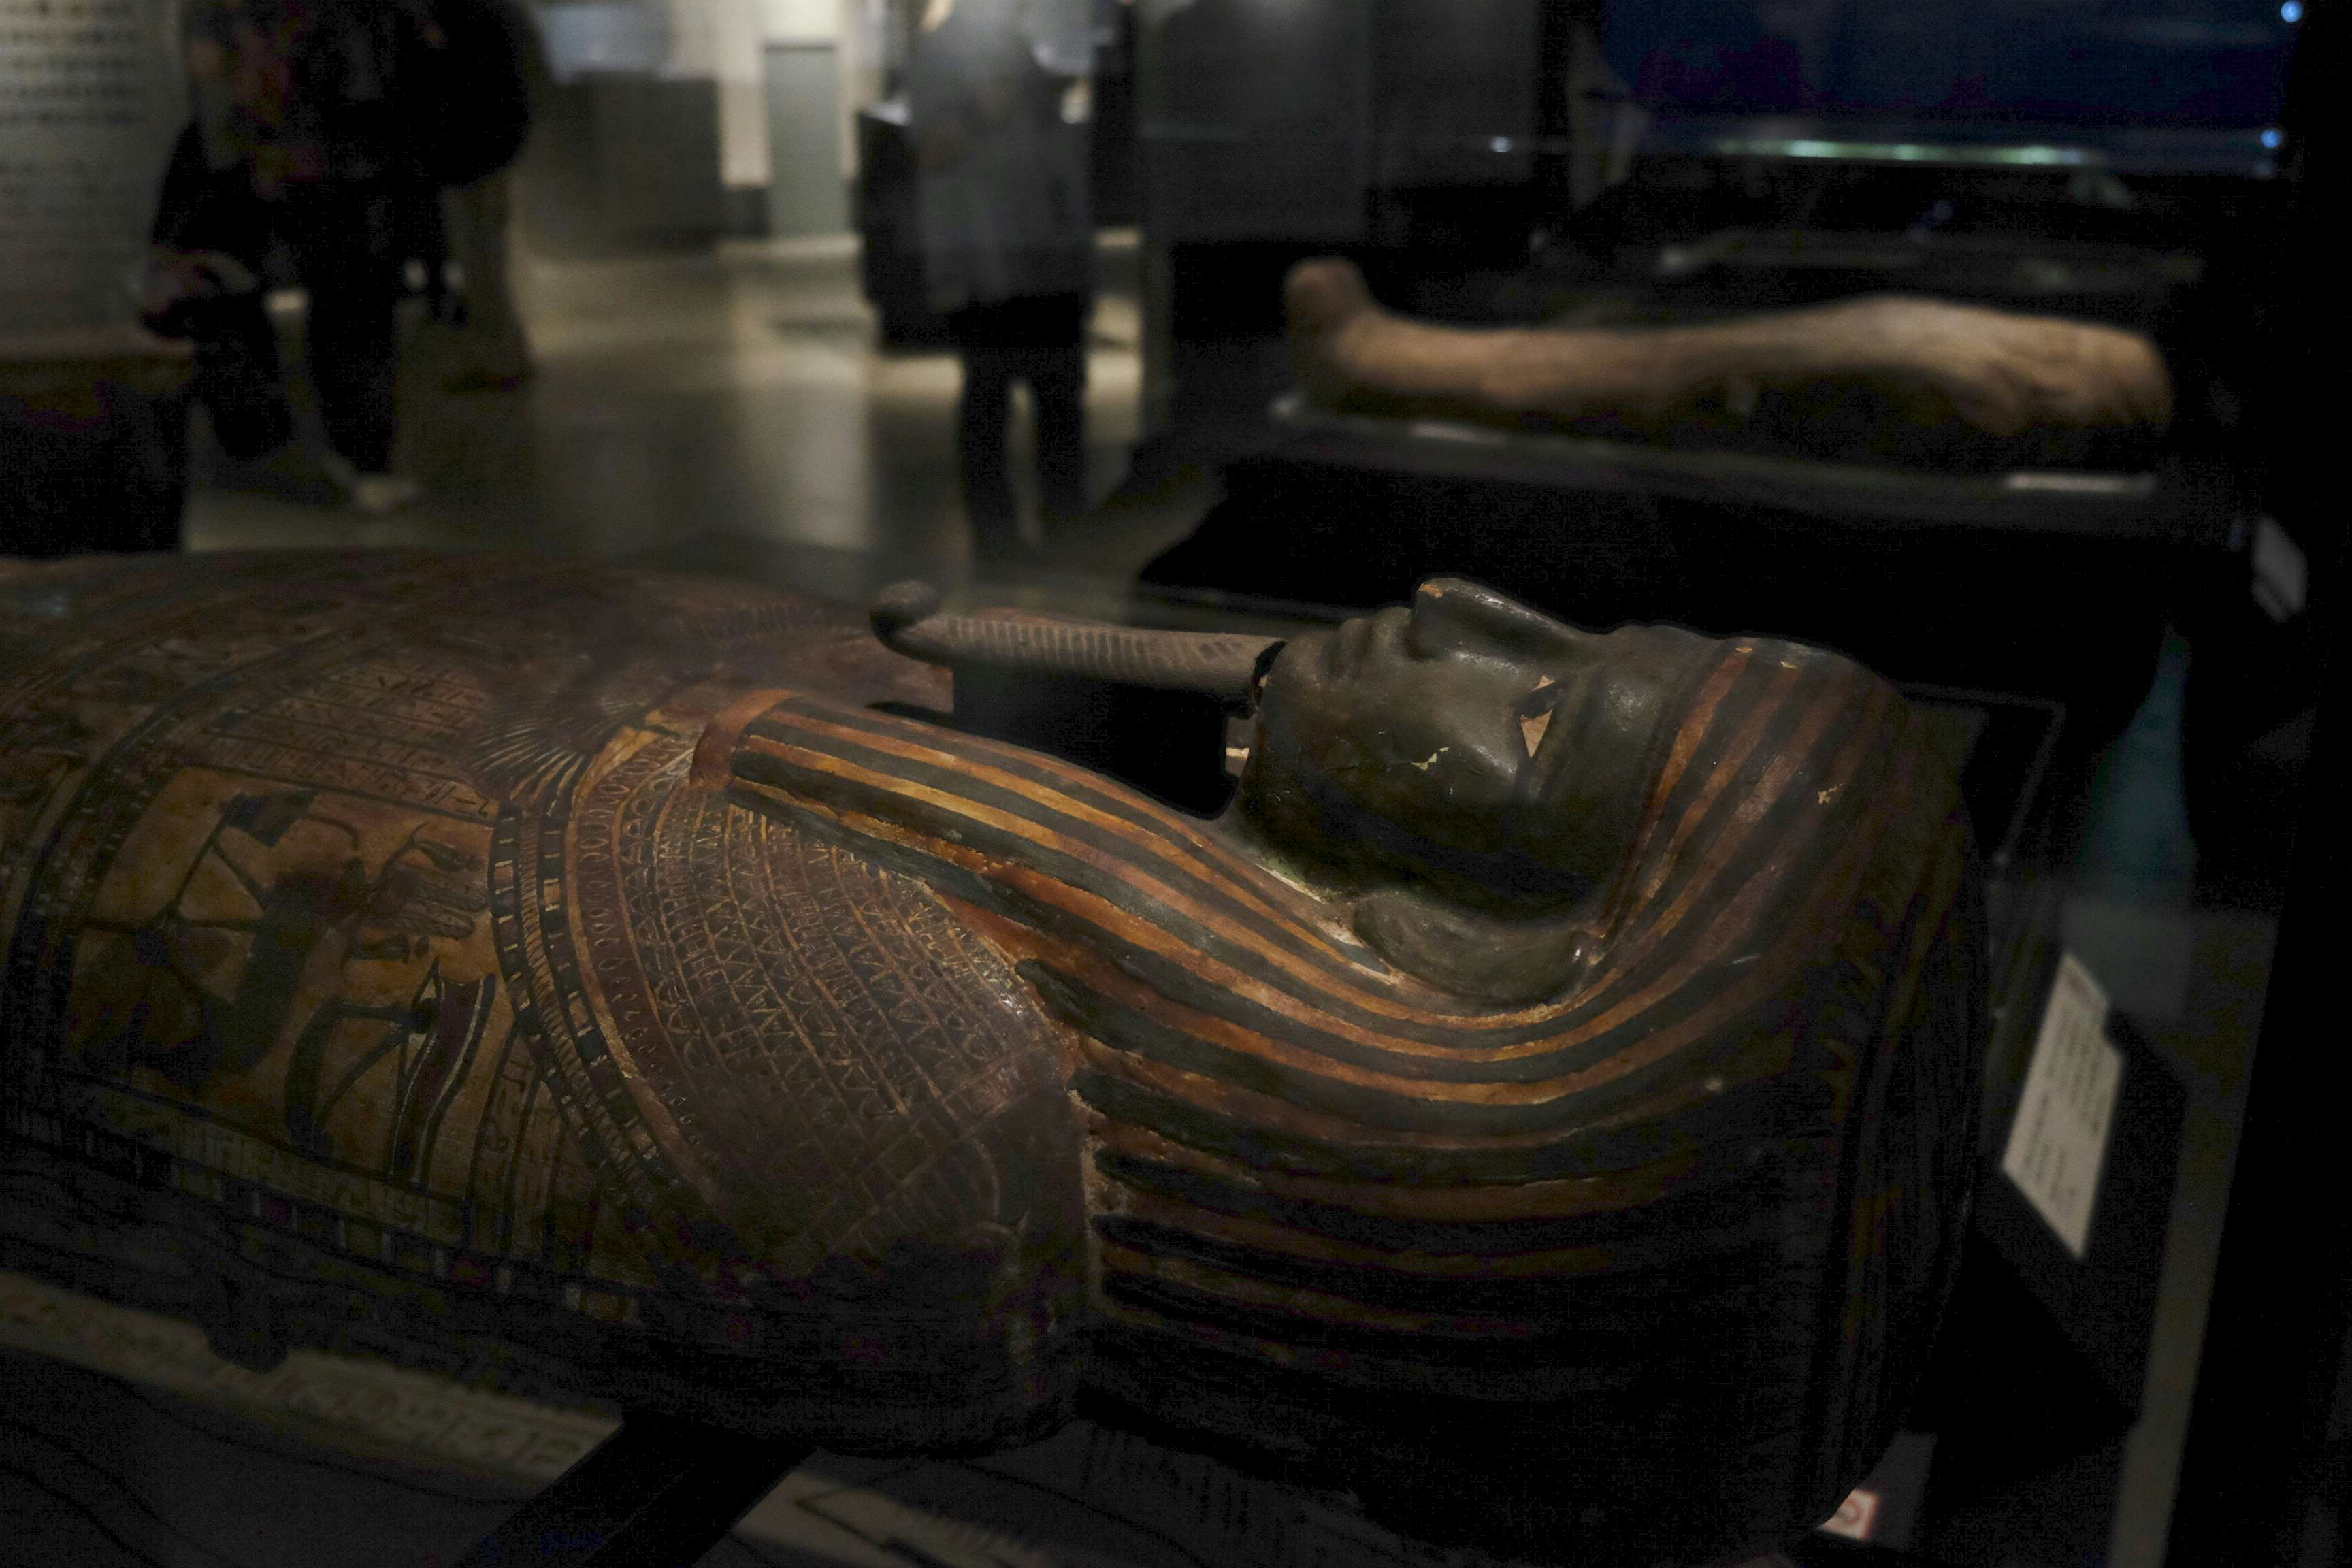 6体のミイラをctスキャンで解析 古代エジプト人の生き様を知る 大英博物館ミイラ展 古代エジプト6つの物語 が開幕 画像ギャラリー 5 35 美術手帖